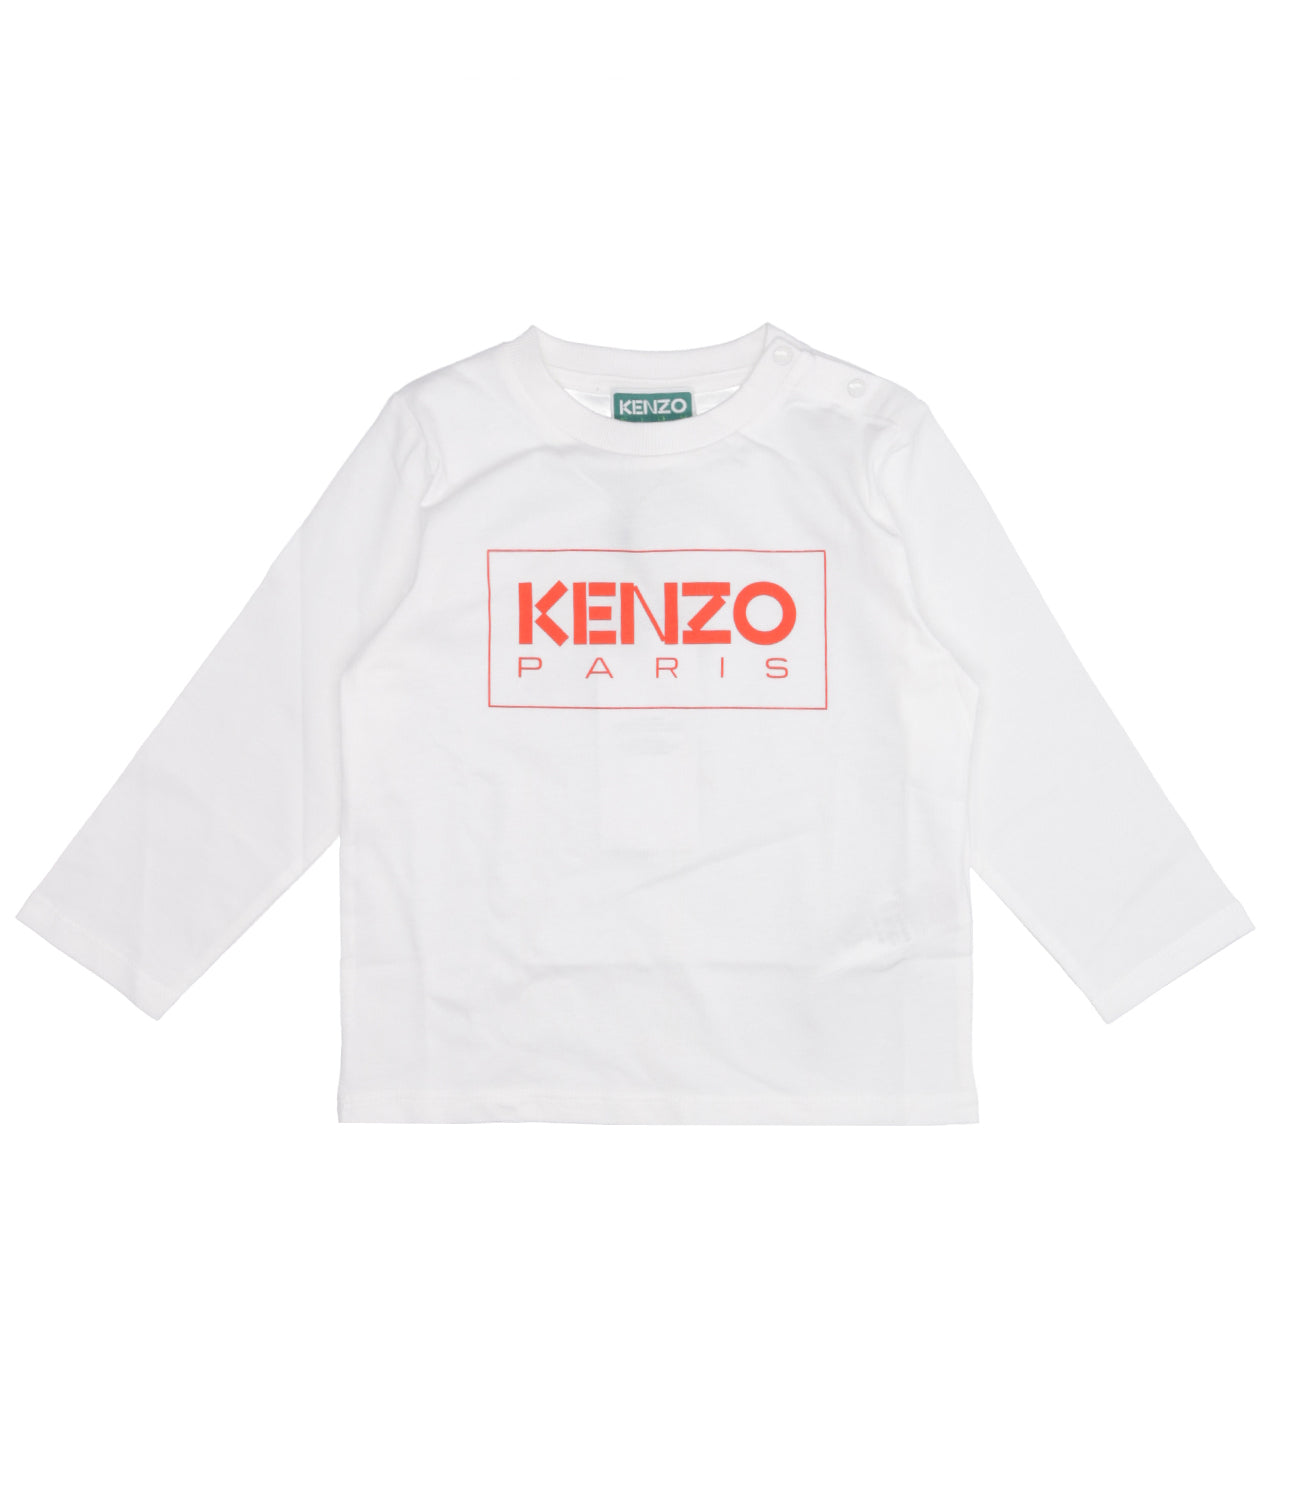 Kenzo Kids | White and Orange T-Shirt